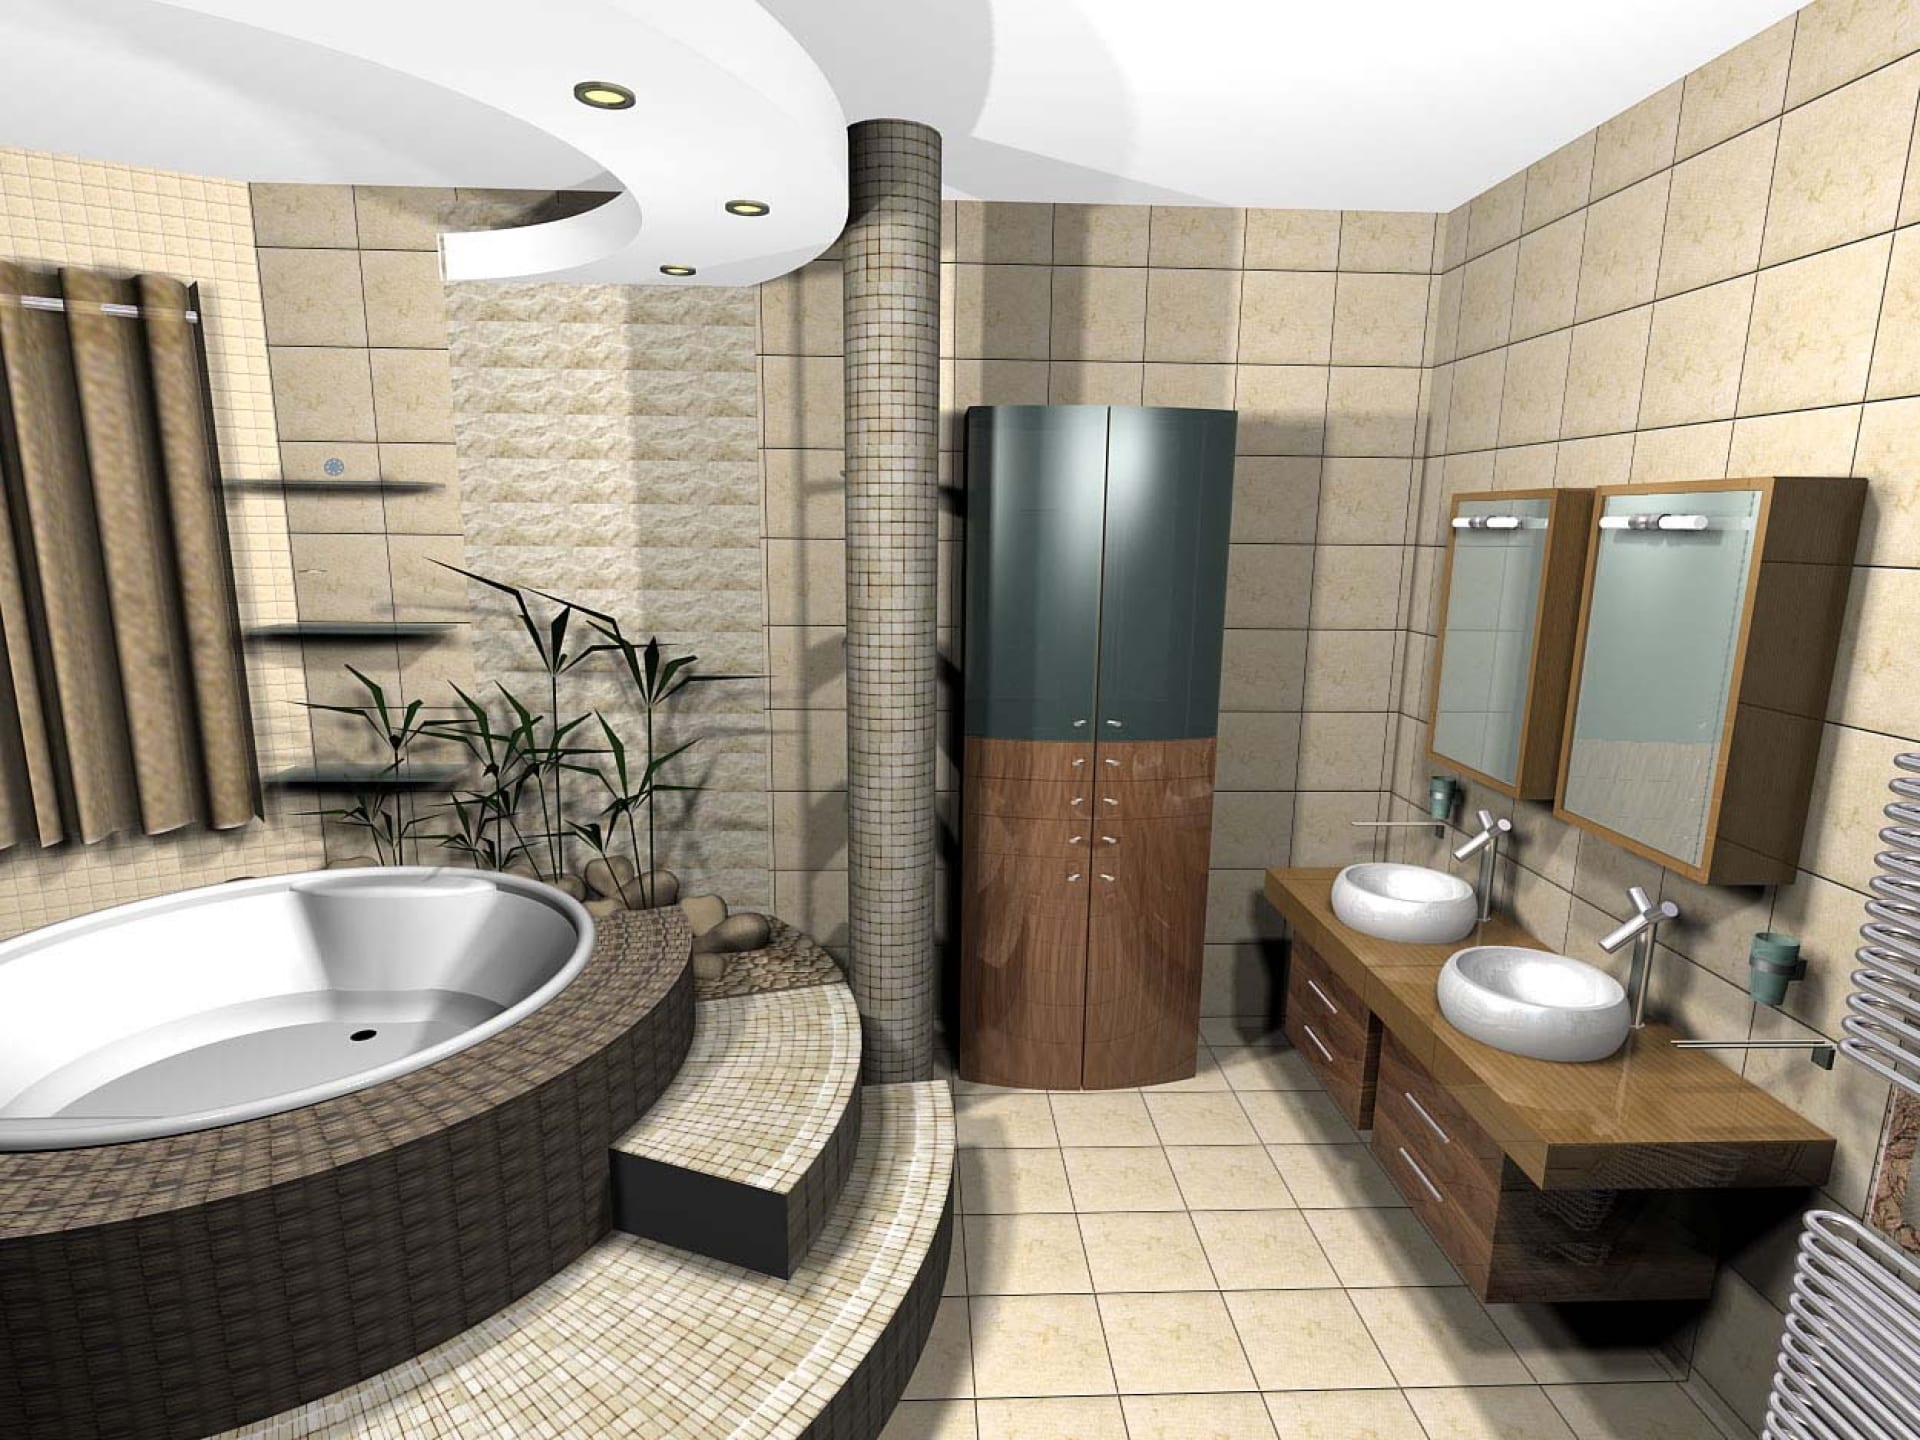 Ванная комната ру. Проект ванной комнаты. Интерьер ванной комнаты. Современная ванная комната. Дизайнерские проекты ванных комнат.